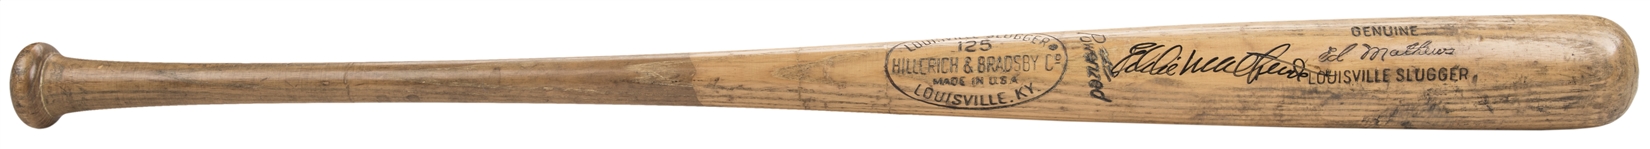 1965-1966 Eddie Mathews Game Used & Signed Hillerich & Bradsby S2 Model Bat (PSA/DNA GU 9.5 & Beckett)